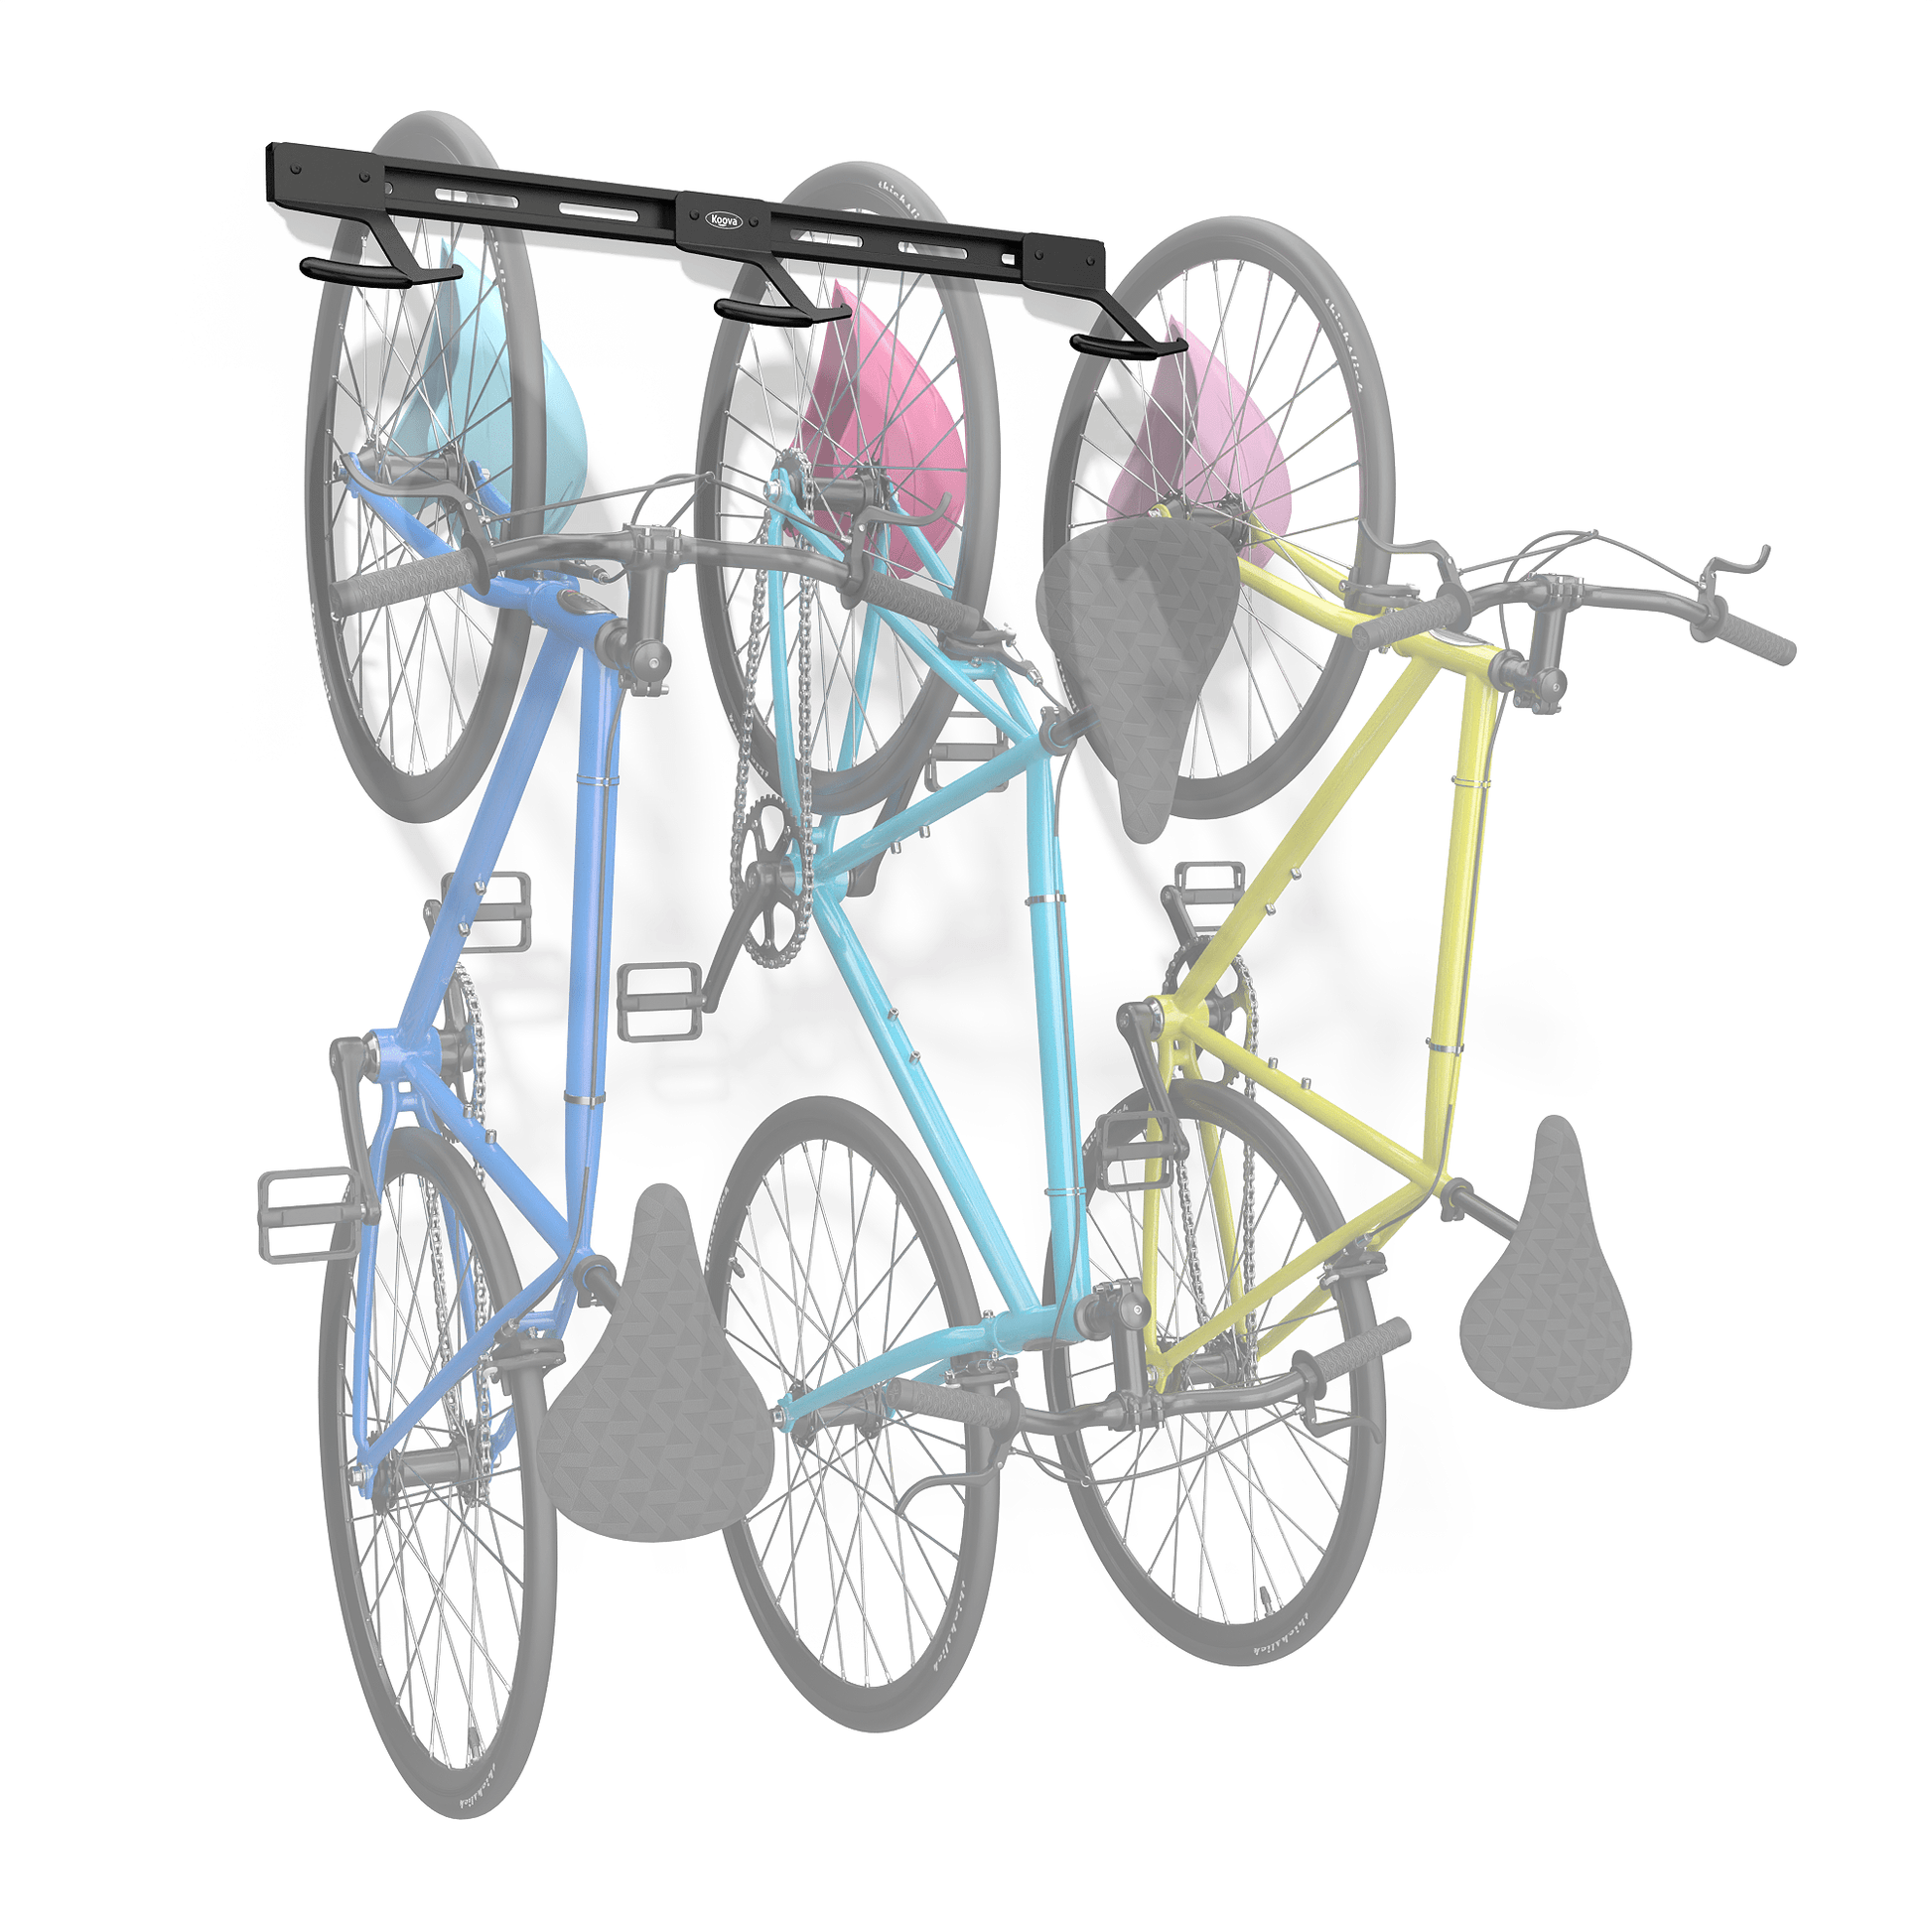 Koova Wall Mount Bike Rack | Steel Bike Mount Wall | Adjustable Bike Hangers for Garage | Easy Mount Bike Rack Garage | Garage Bike Rack Wall Mount